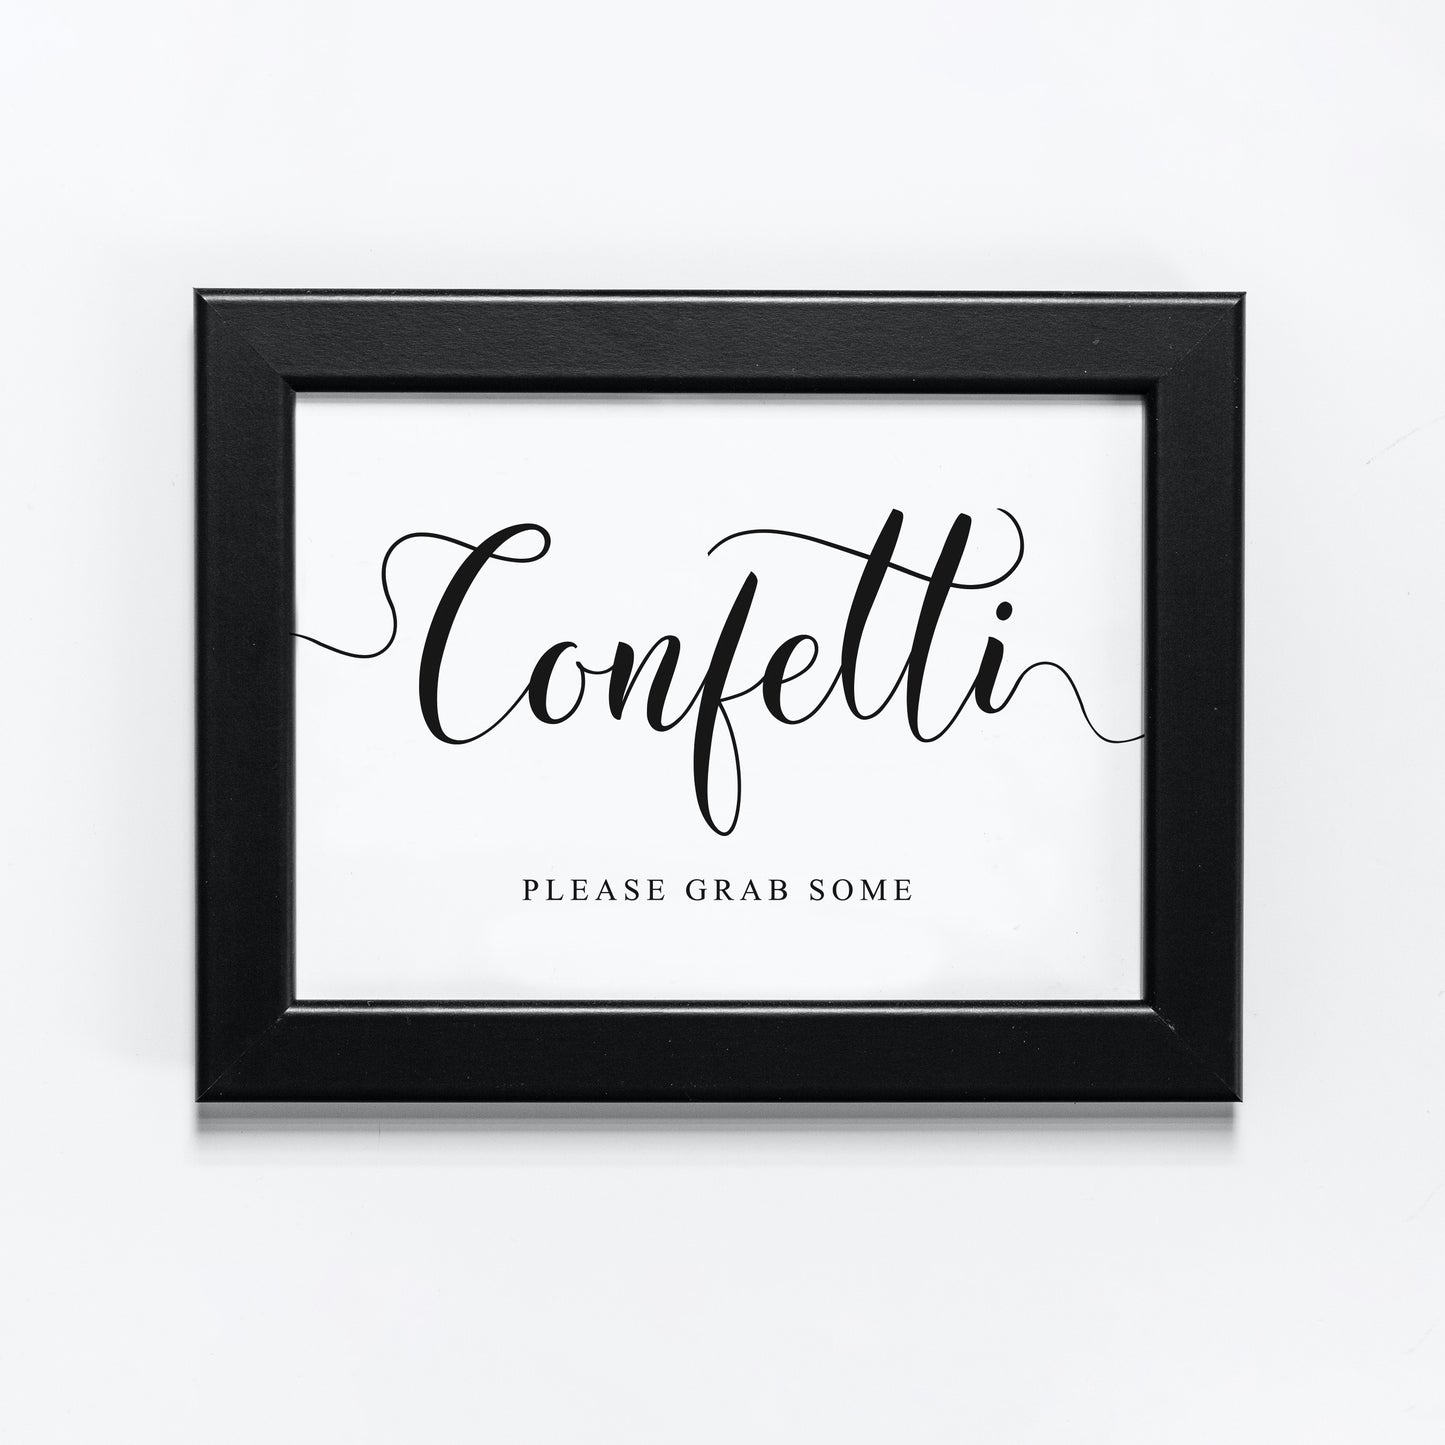 Wedding confetti sign in black frame